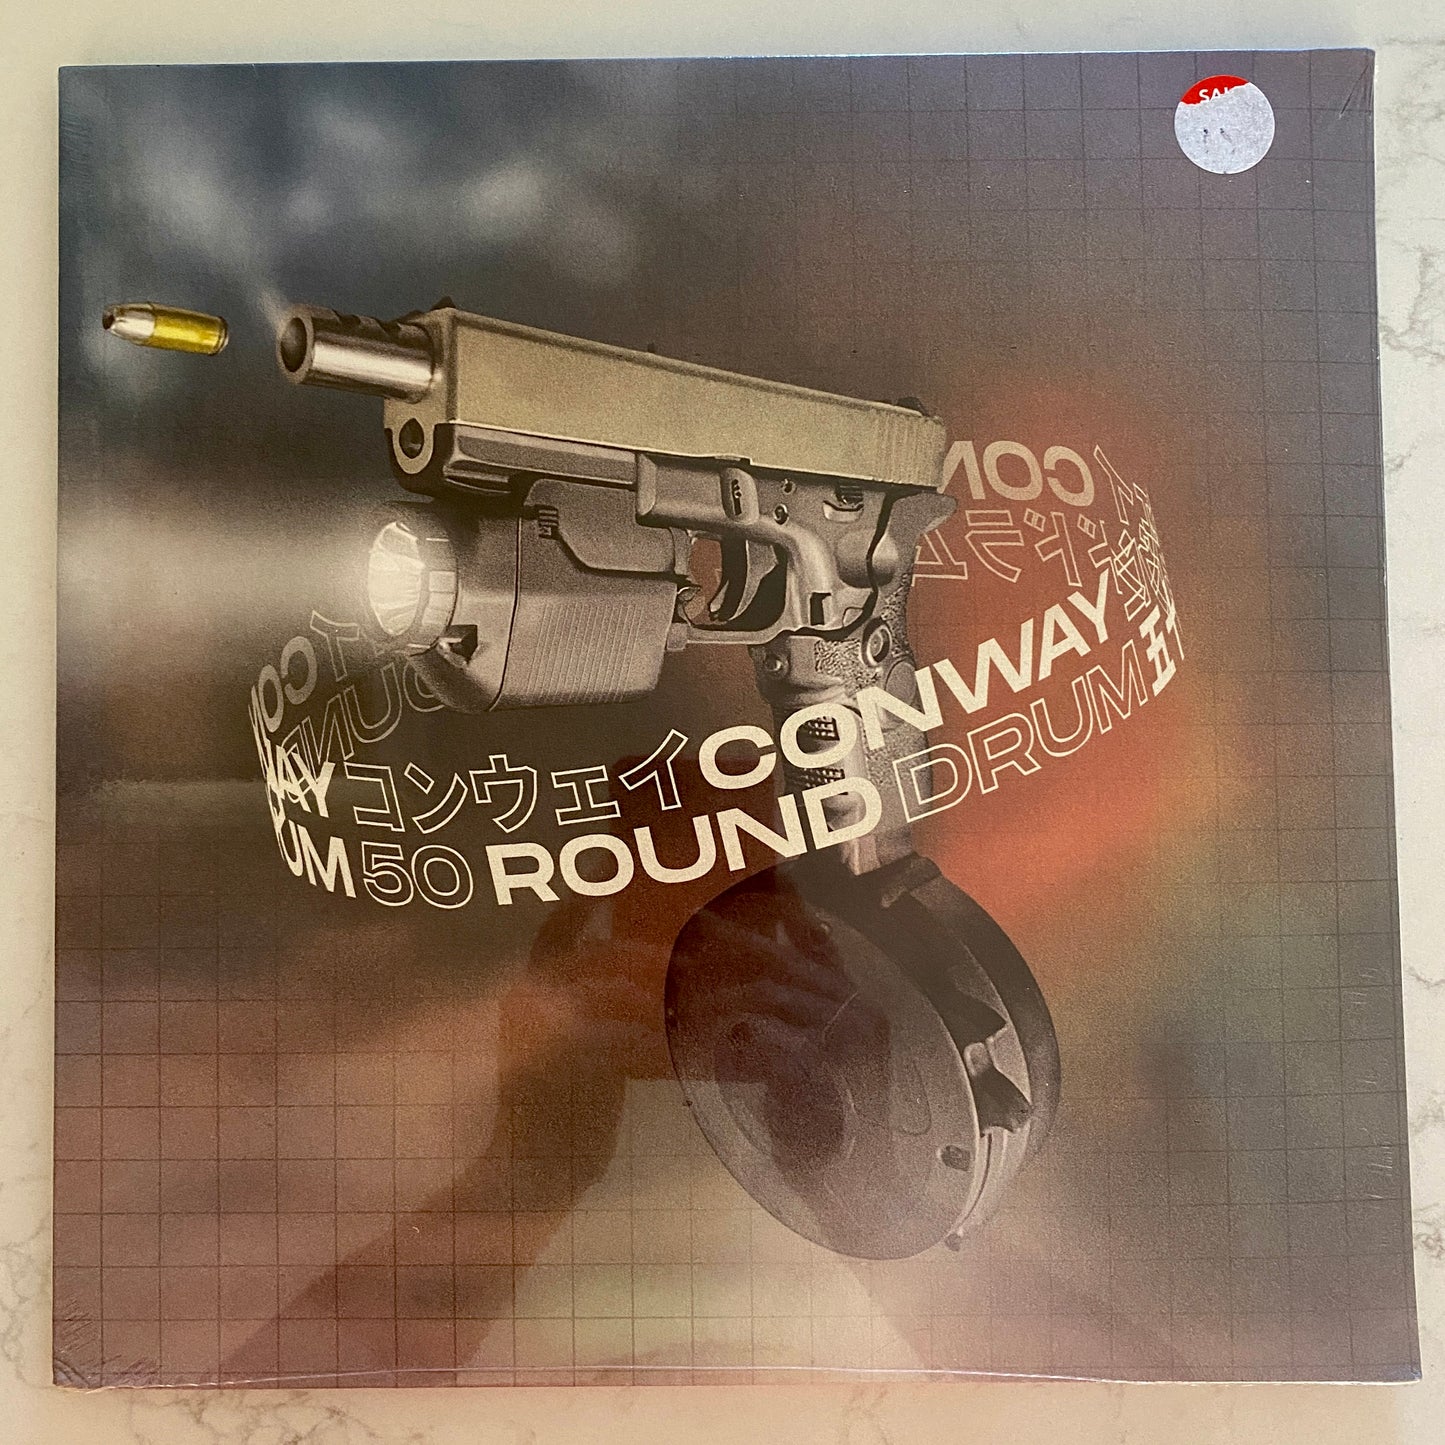 Conway (6) - 50 Round Drum (3xLP, Ltd, Mixtape, Red). SEALED! HIP-HOP